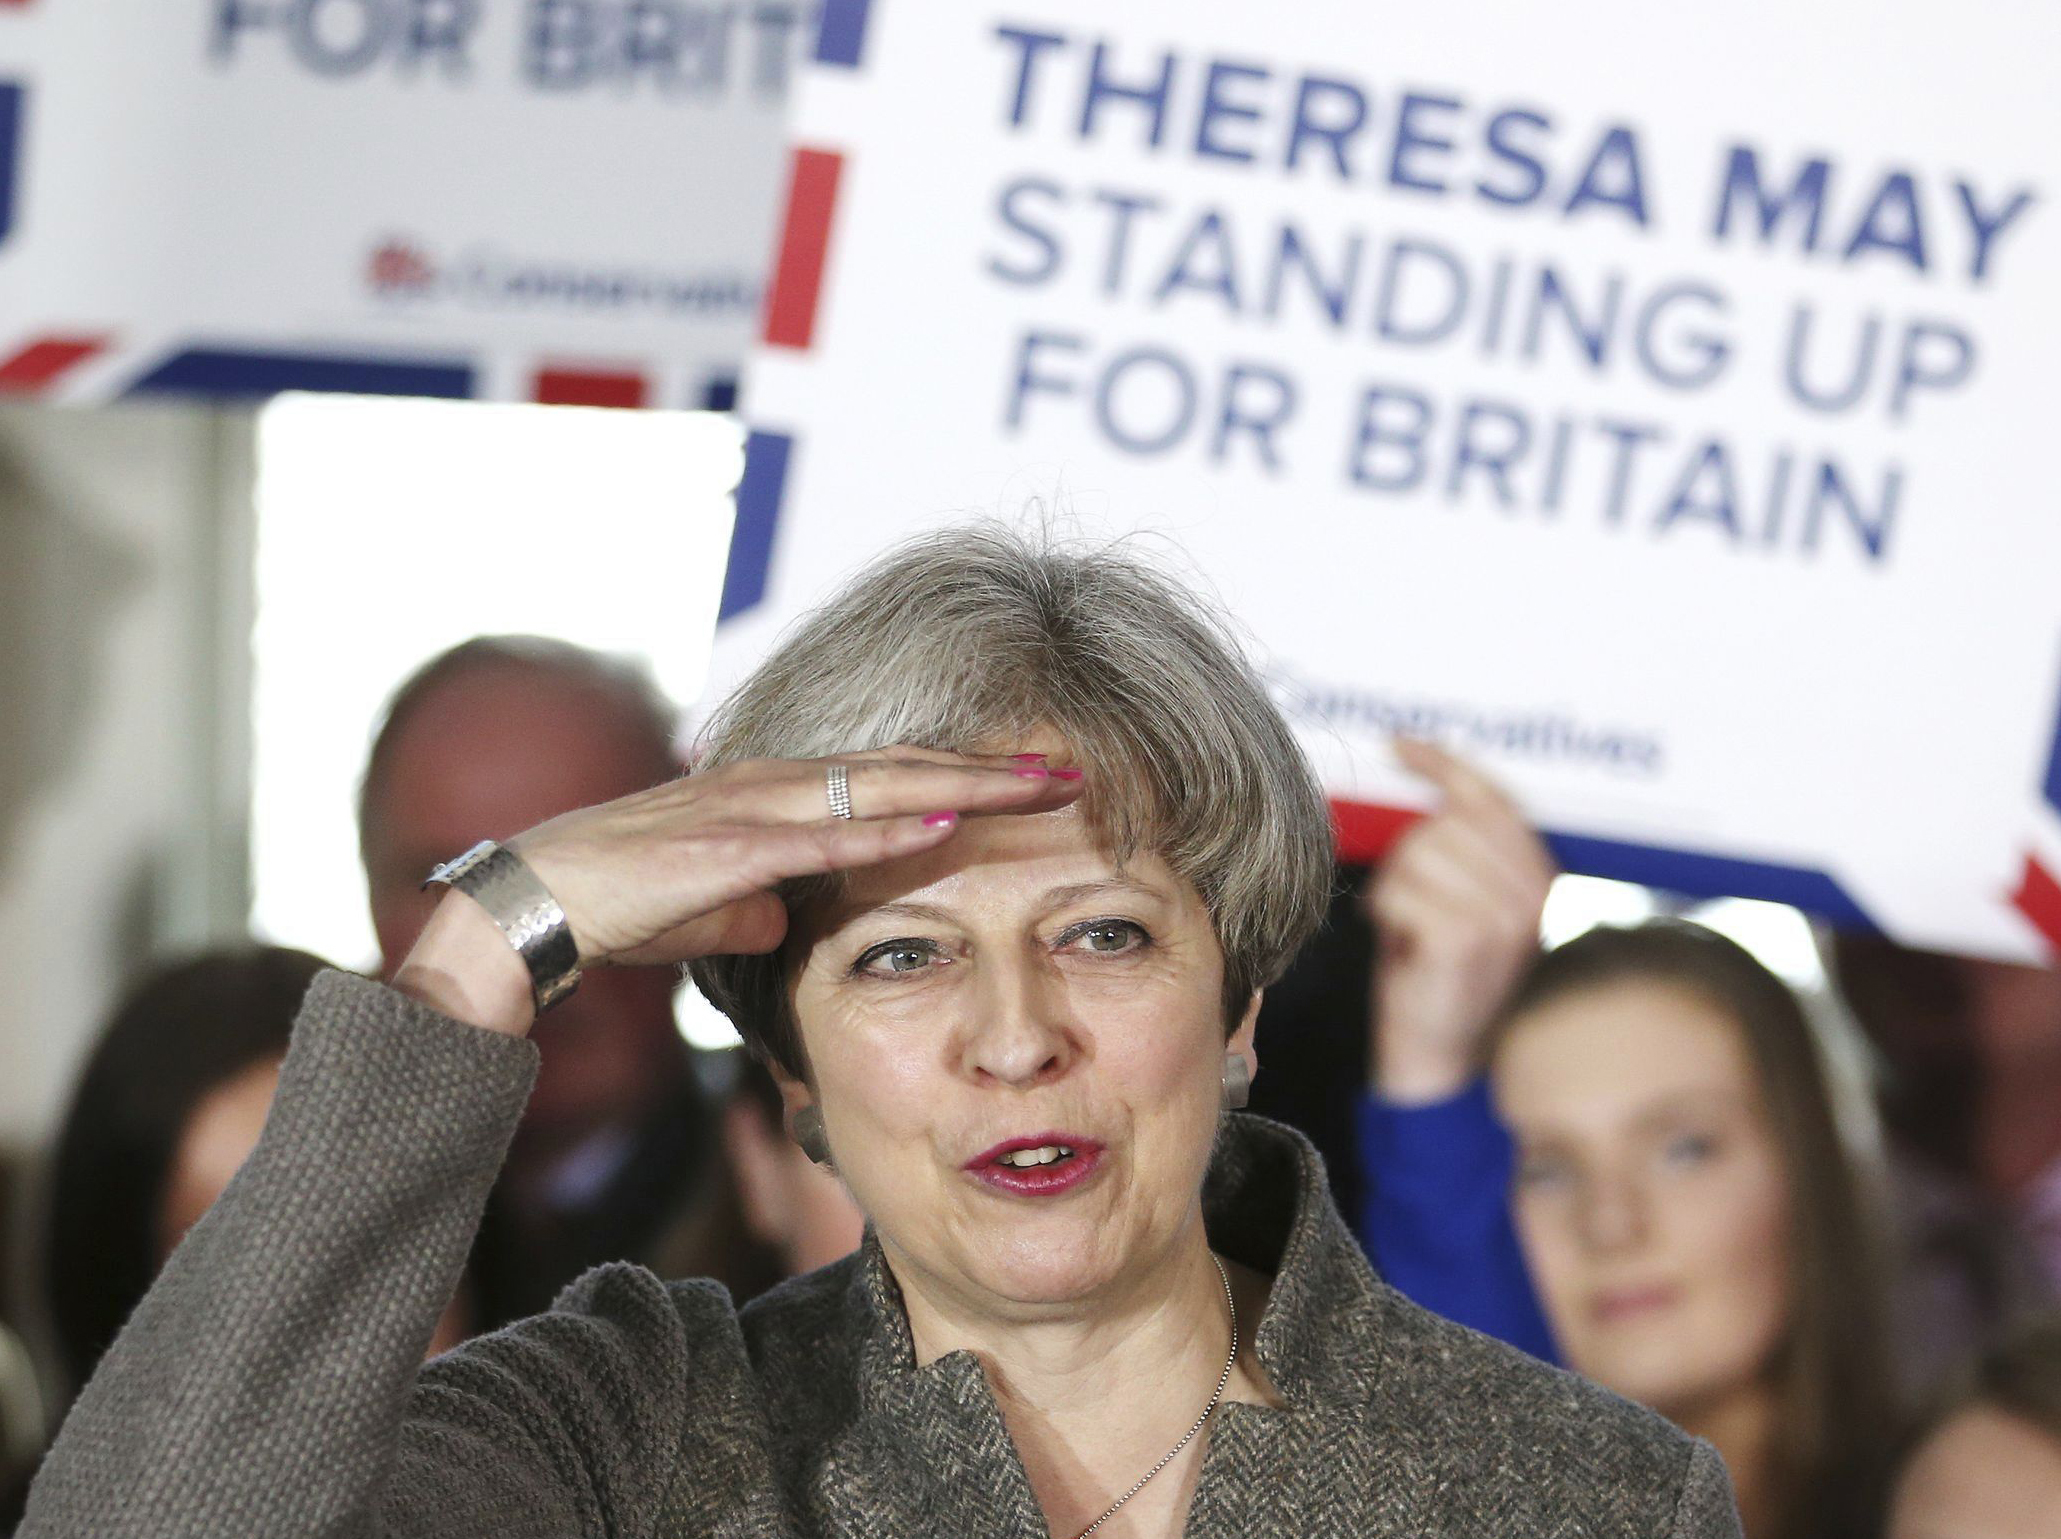 Британският премиер Тереза Мей направи предзиборна обиколка в Шотландия-надписът на плаката гласи ”Тереза Мей защитава Британия”